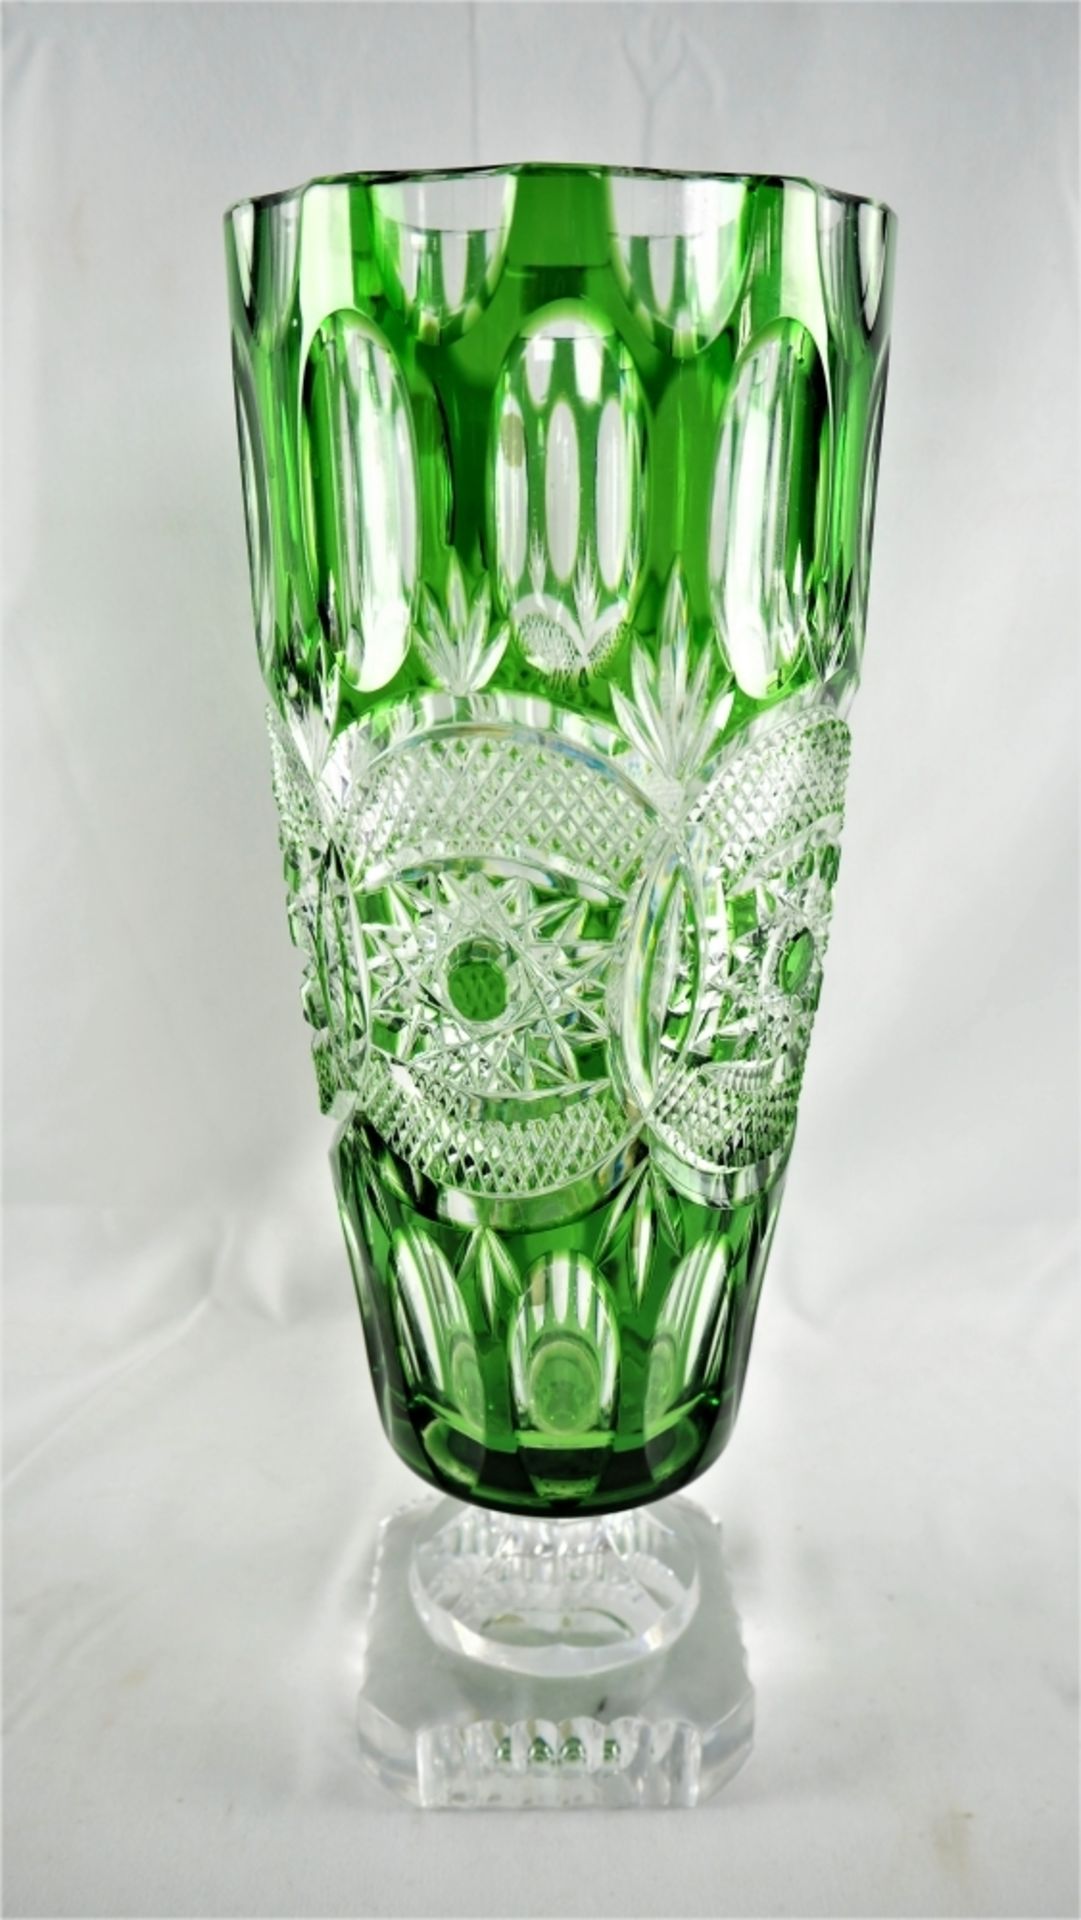 Große Kristallvase, Bleikristalldurchsichtig und teils grün überfangen, viereckiger Stan